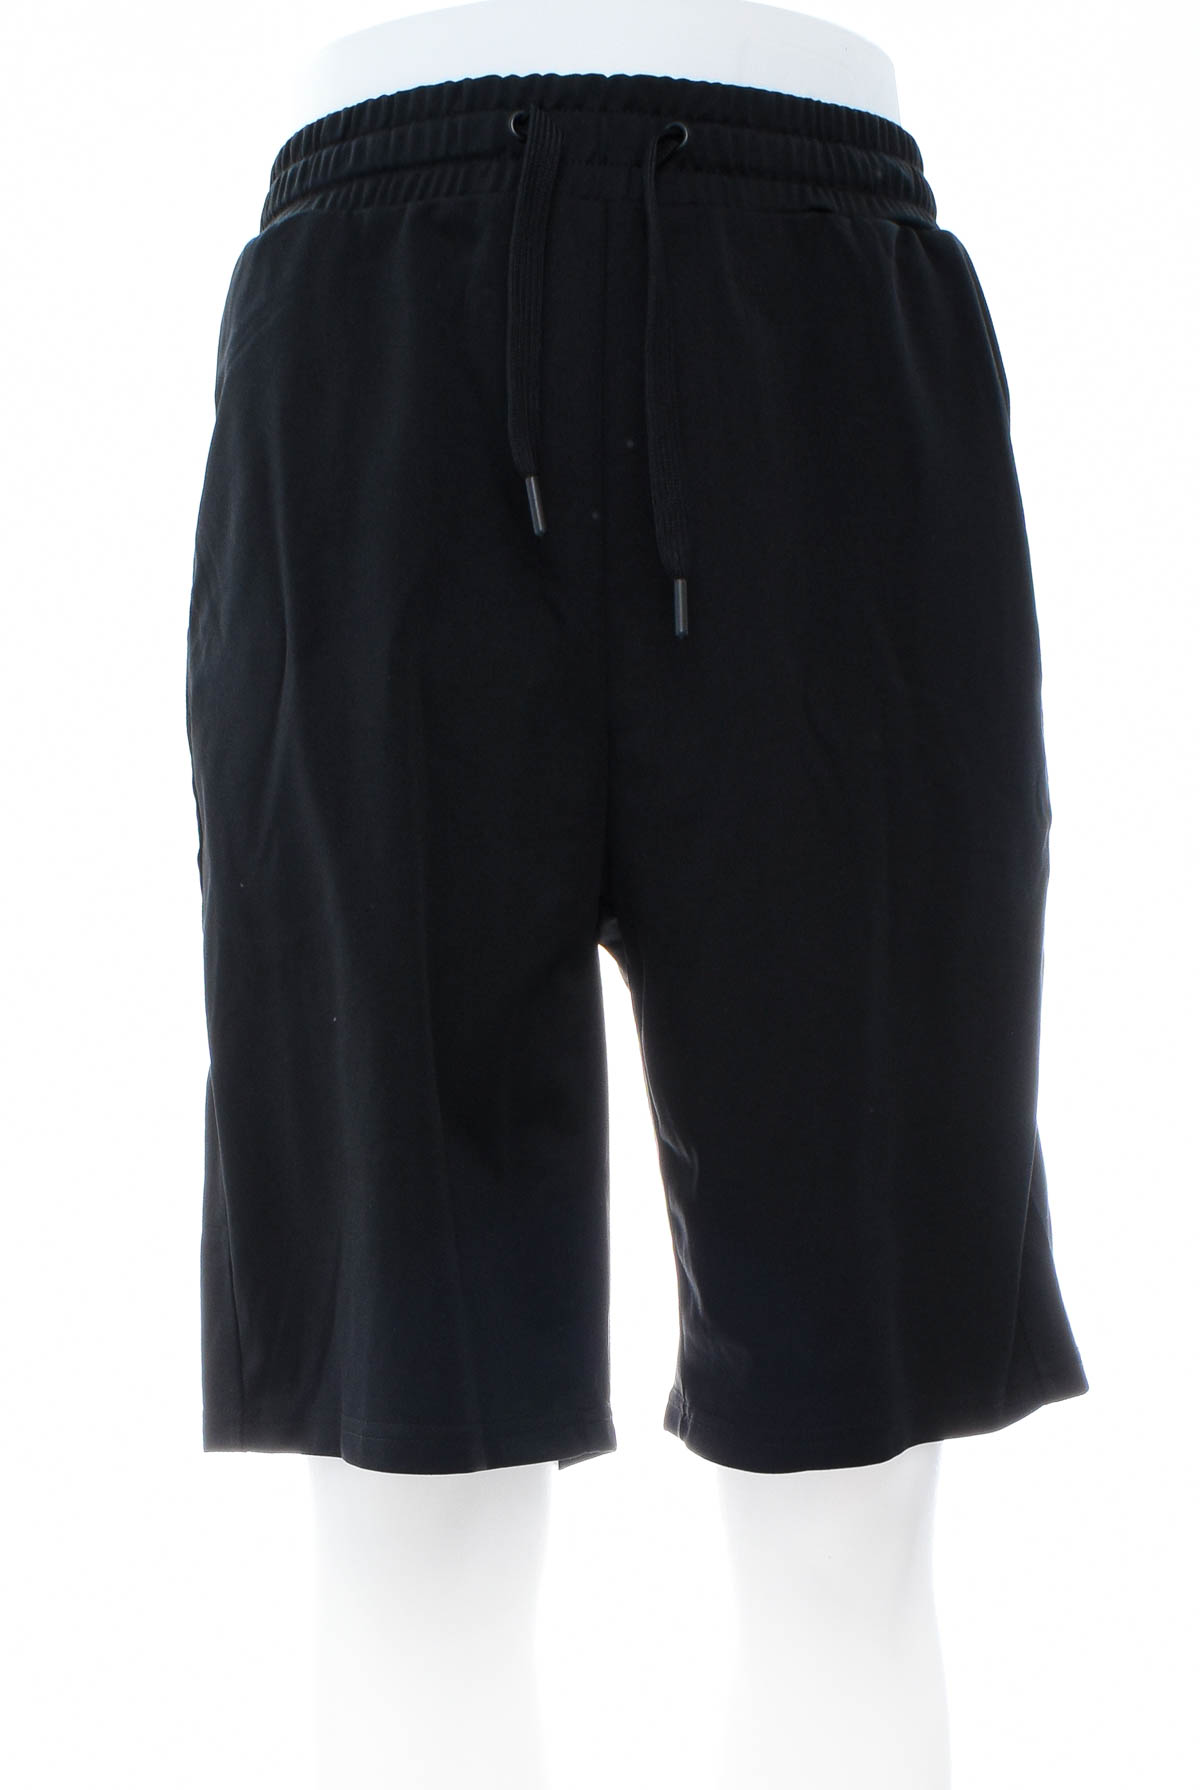 Men's shorts - Redmax - 0